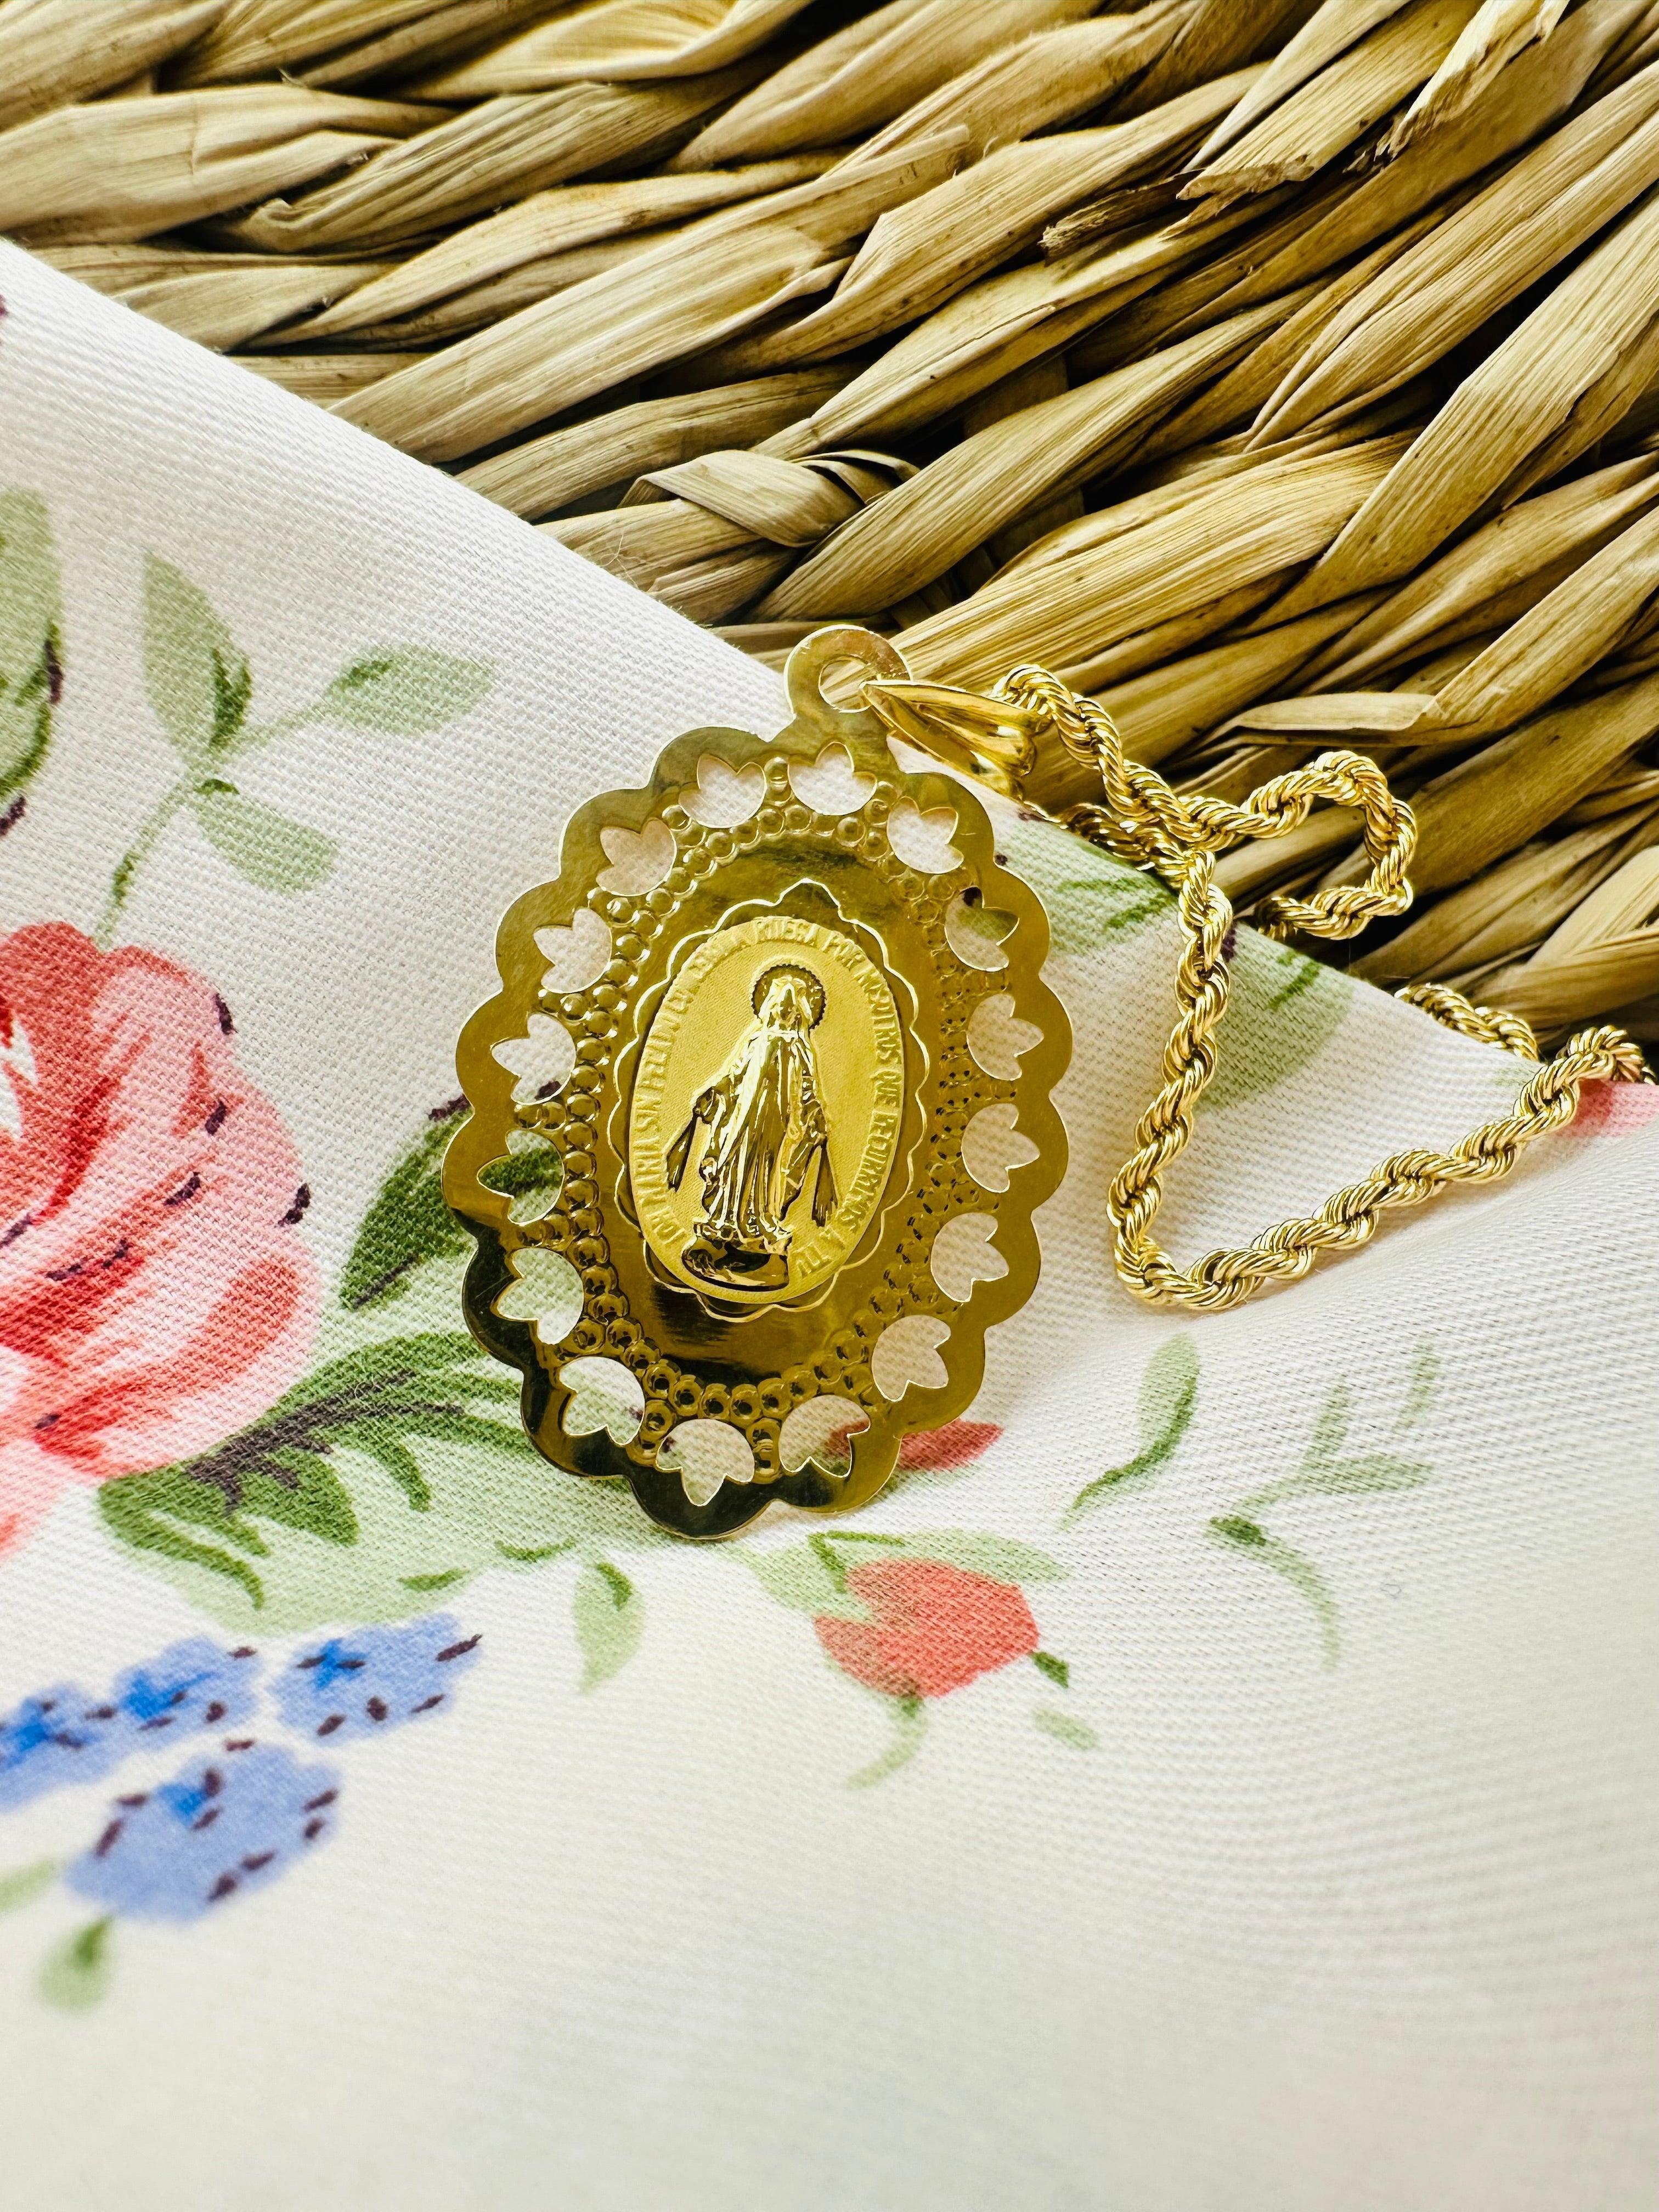 Médaille Miraculeuse à bordures ajourées en pétales gravable en or jaune 18 carats - Maison Gabriel